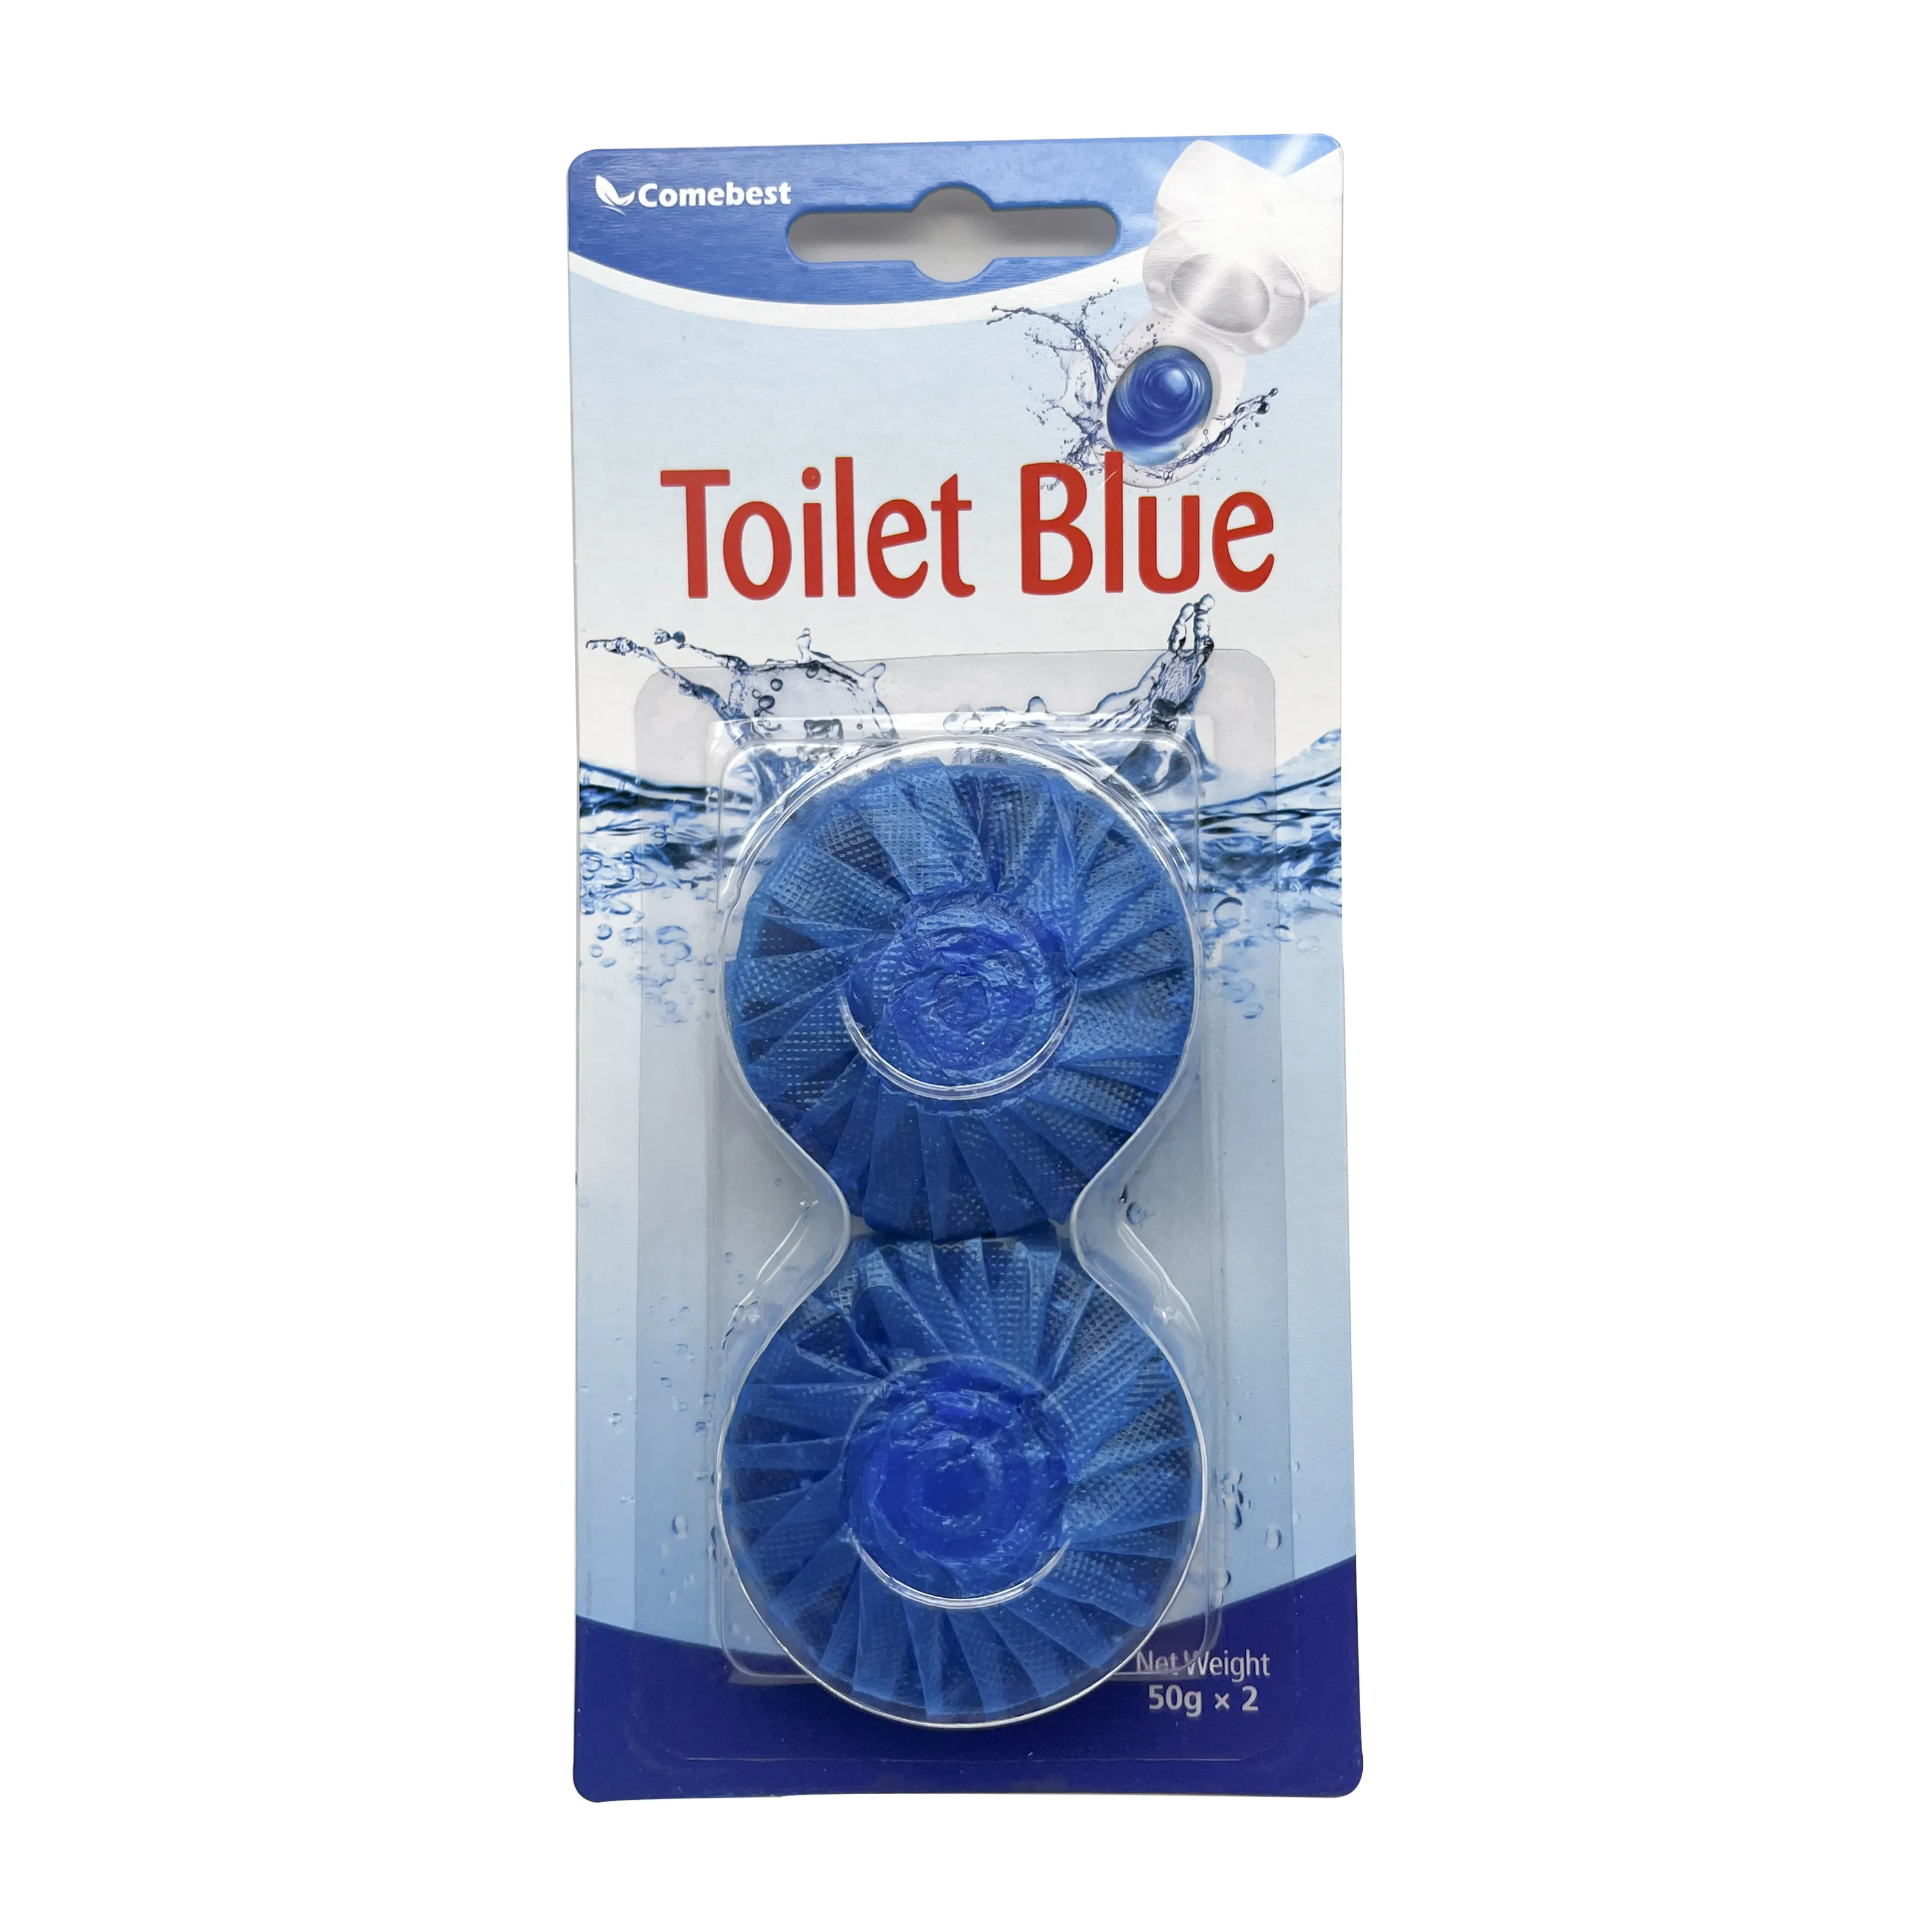 Limpador atacado de tigela de vaso sanitário, de alta qualidade, bolha azul, bloco de desodorante, limpador 50g * 2